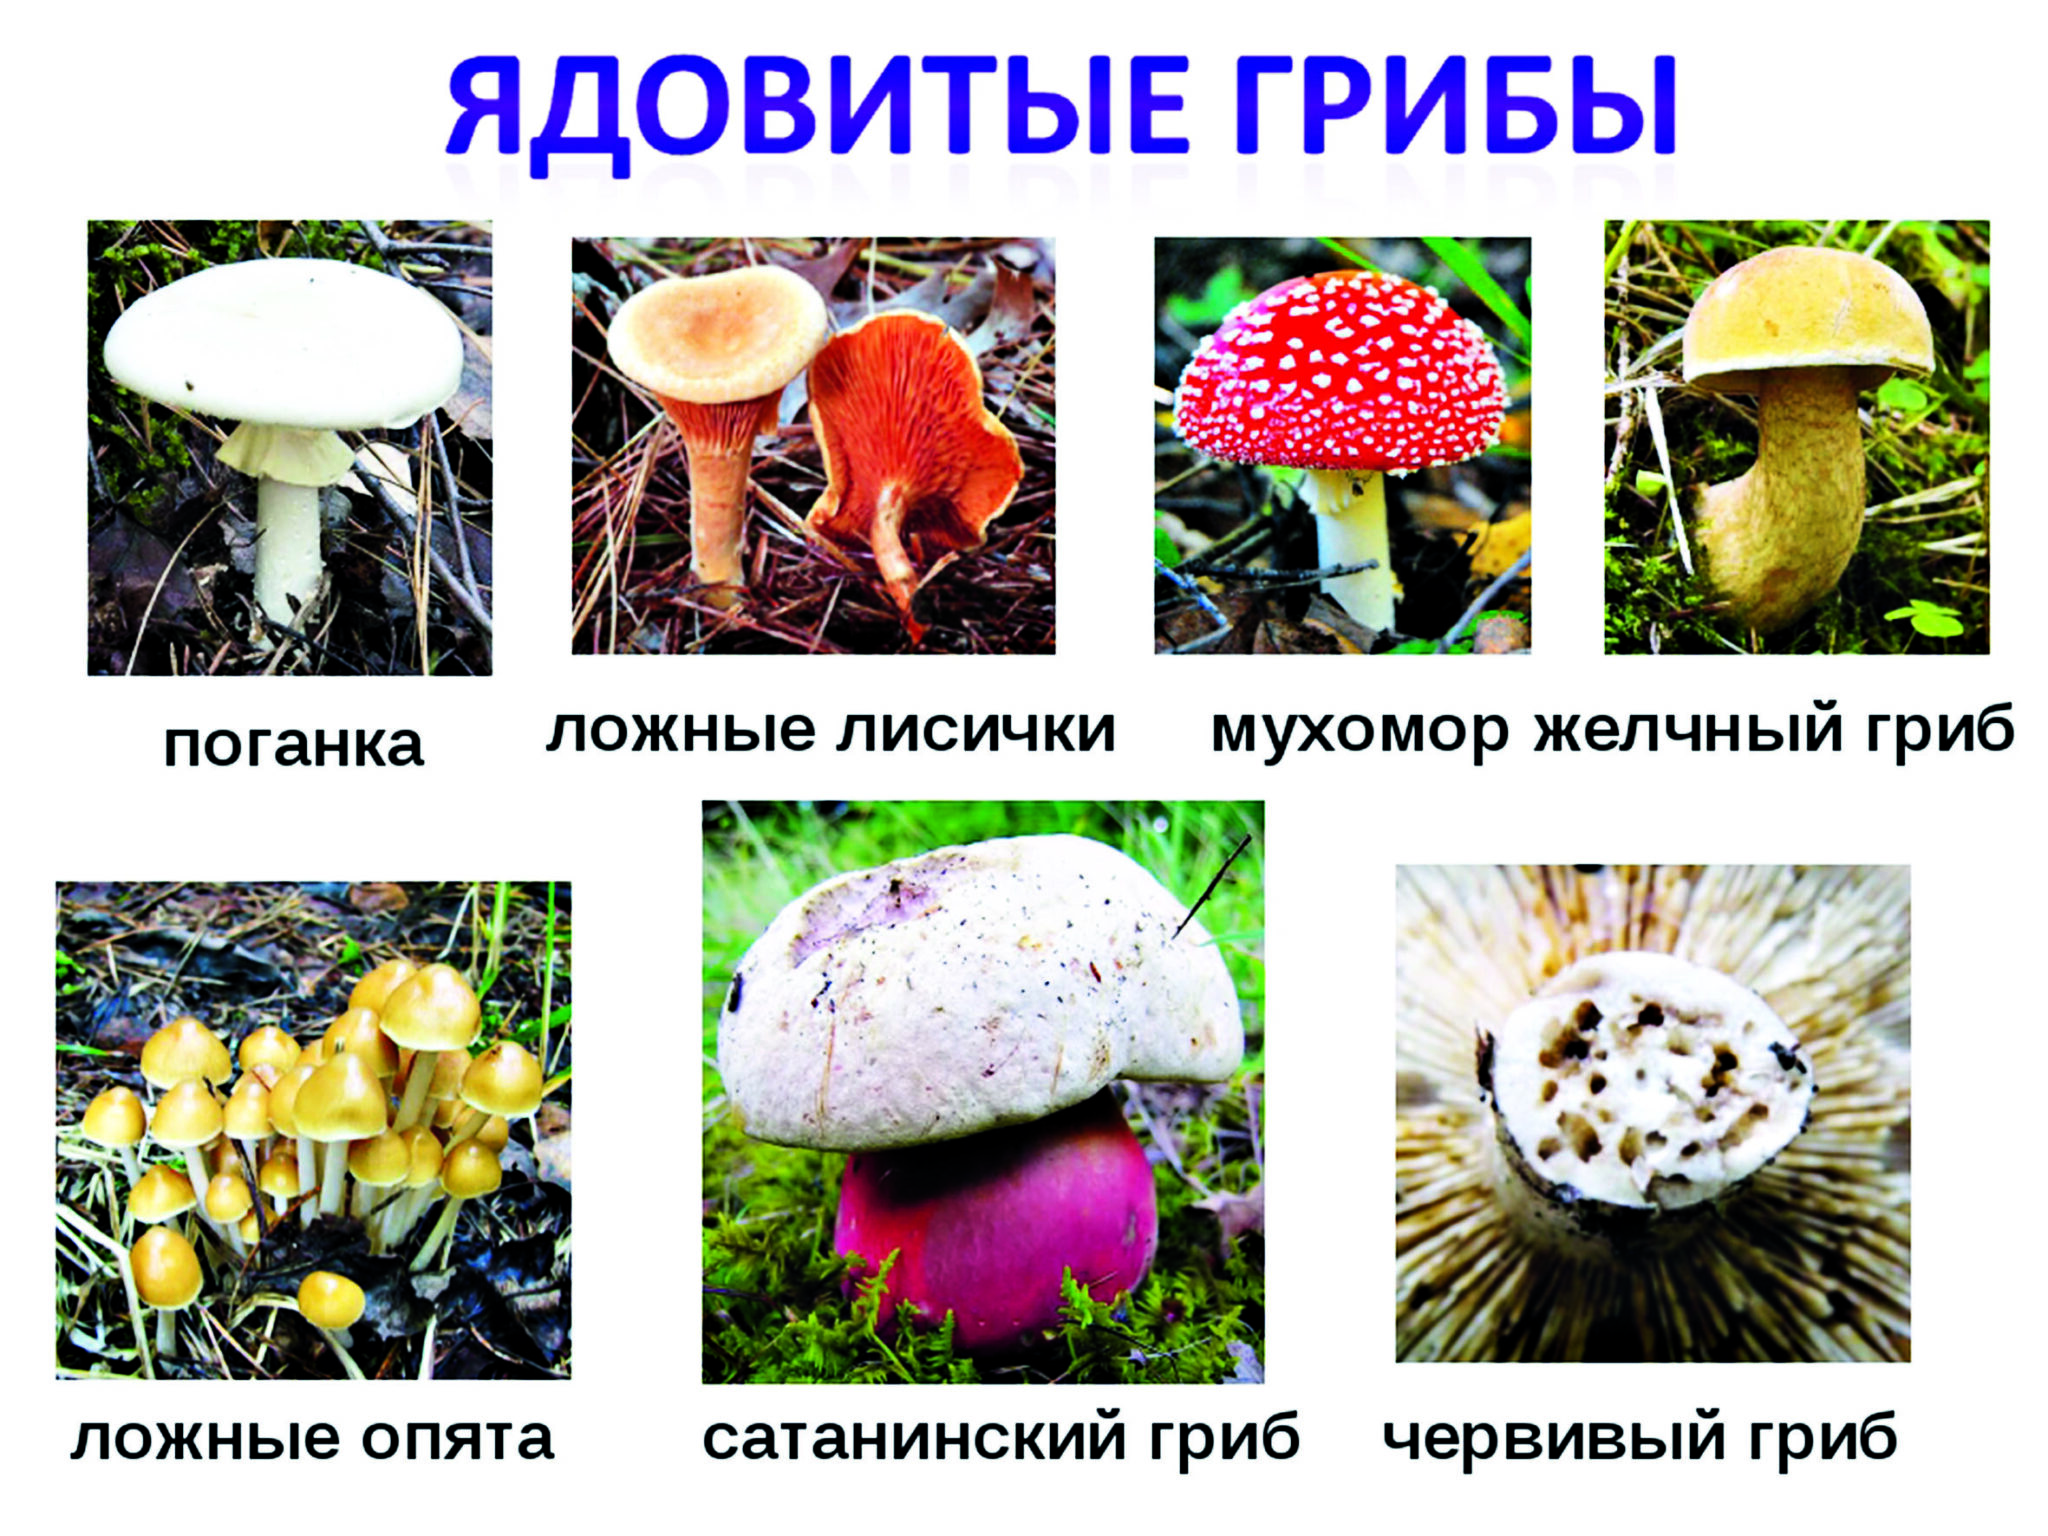 грибы картинки в москве